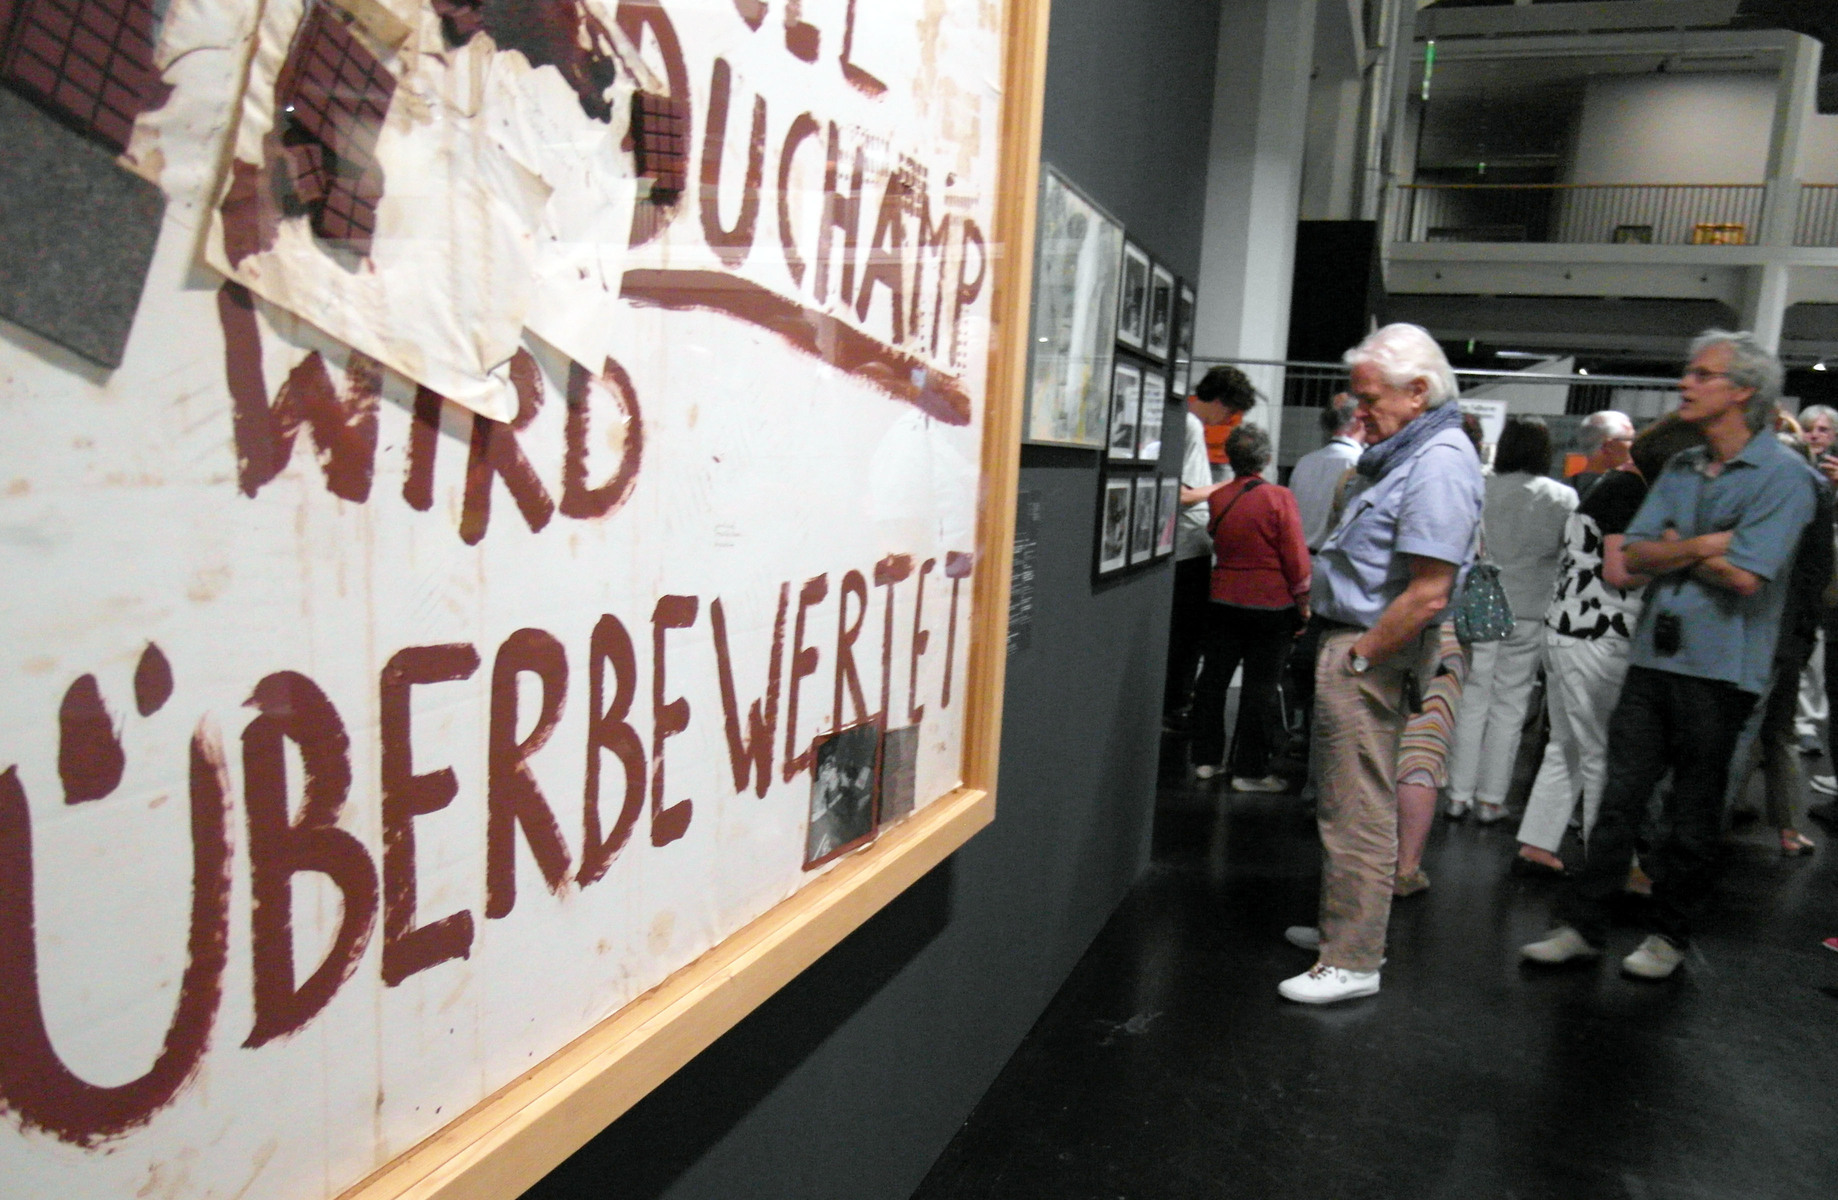 Öffentliche Führung durch die Ausstellung „Beuys Brock Vostell“ im ZKM Karlsruhe, Bild: © Leonore Welzin, 19.09.2014.